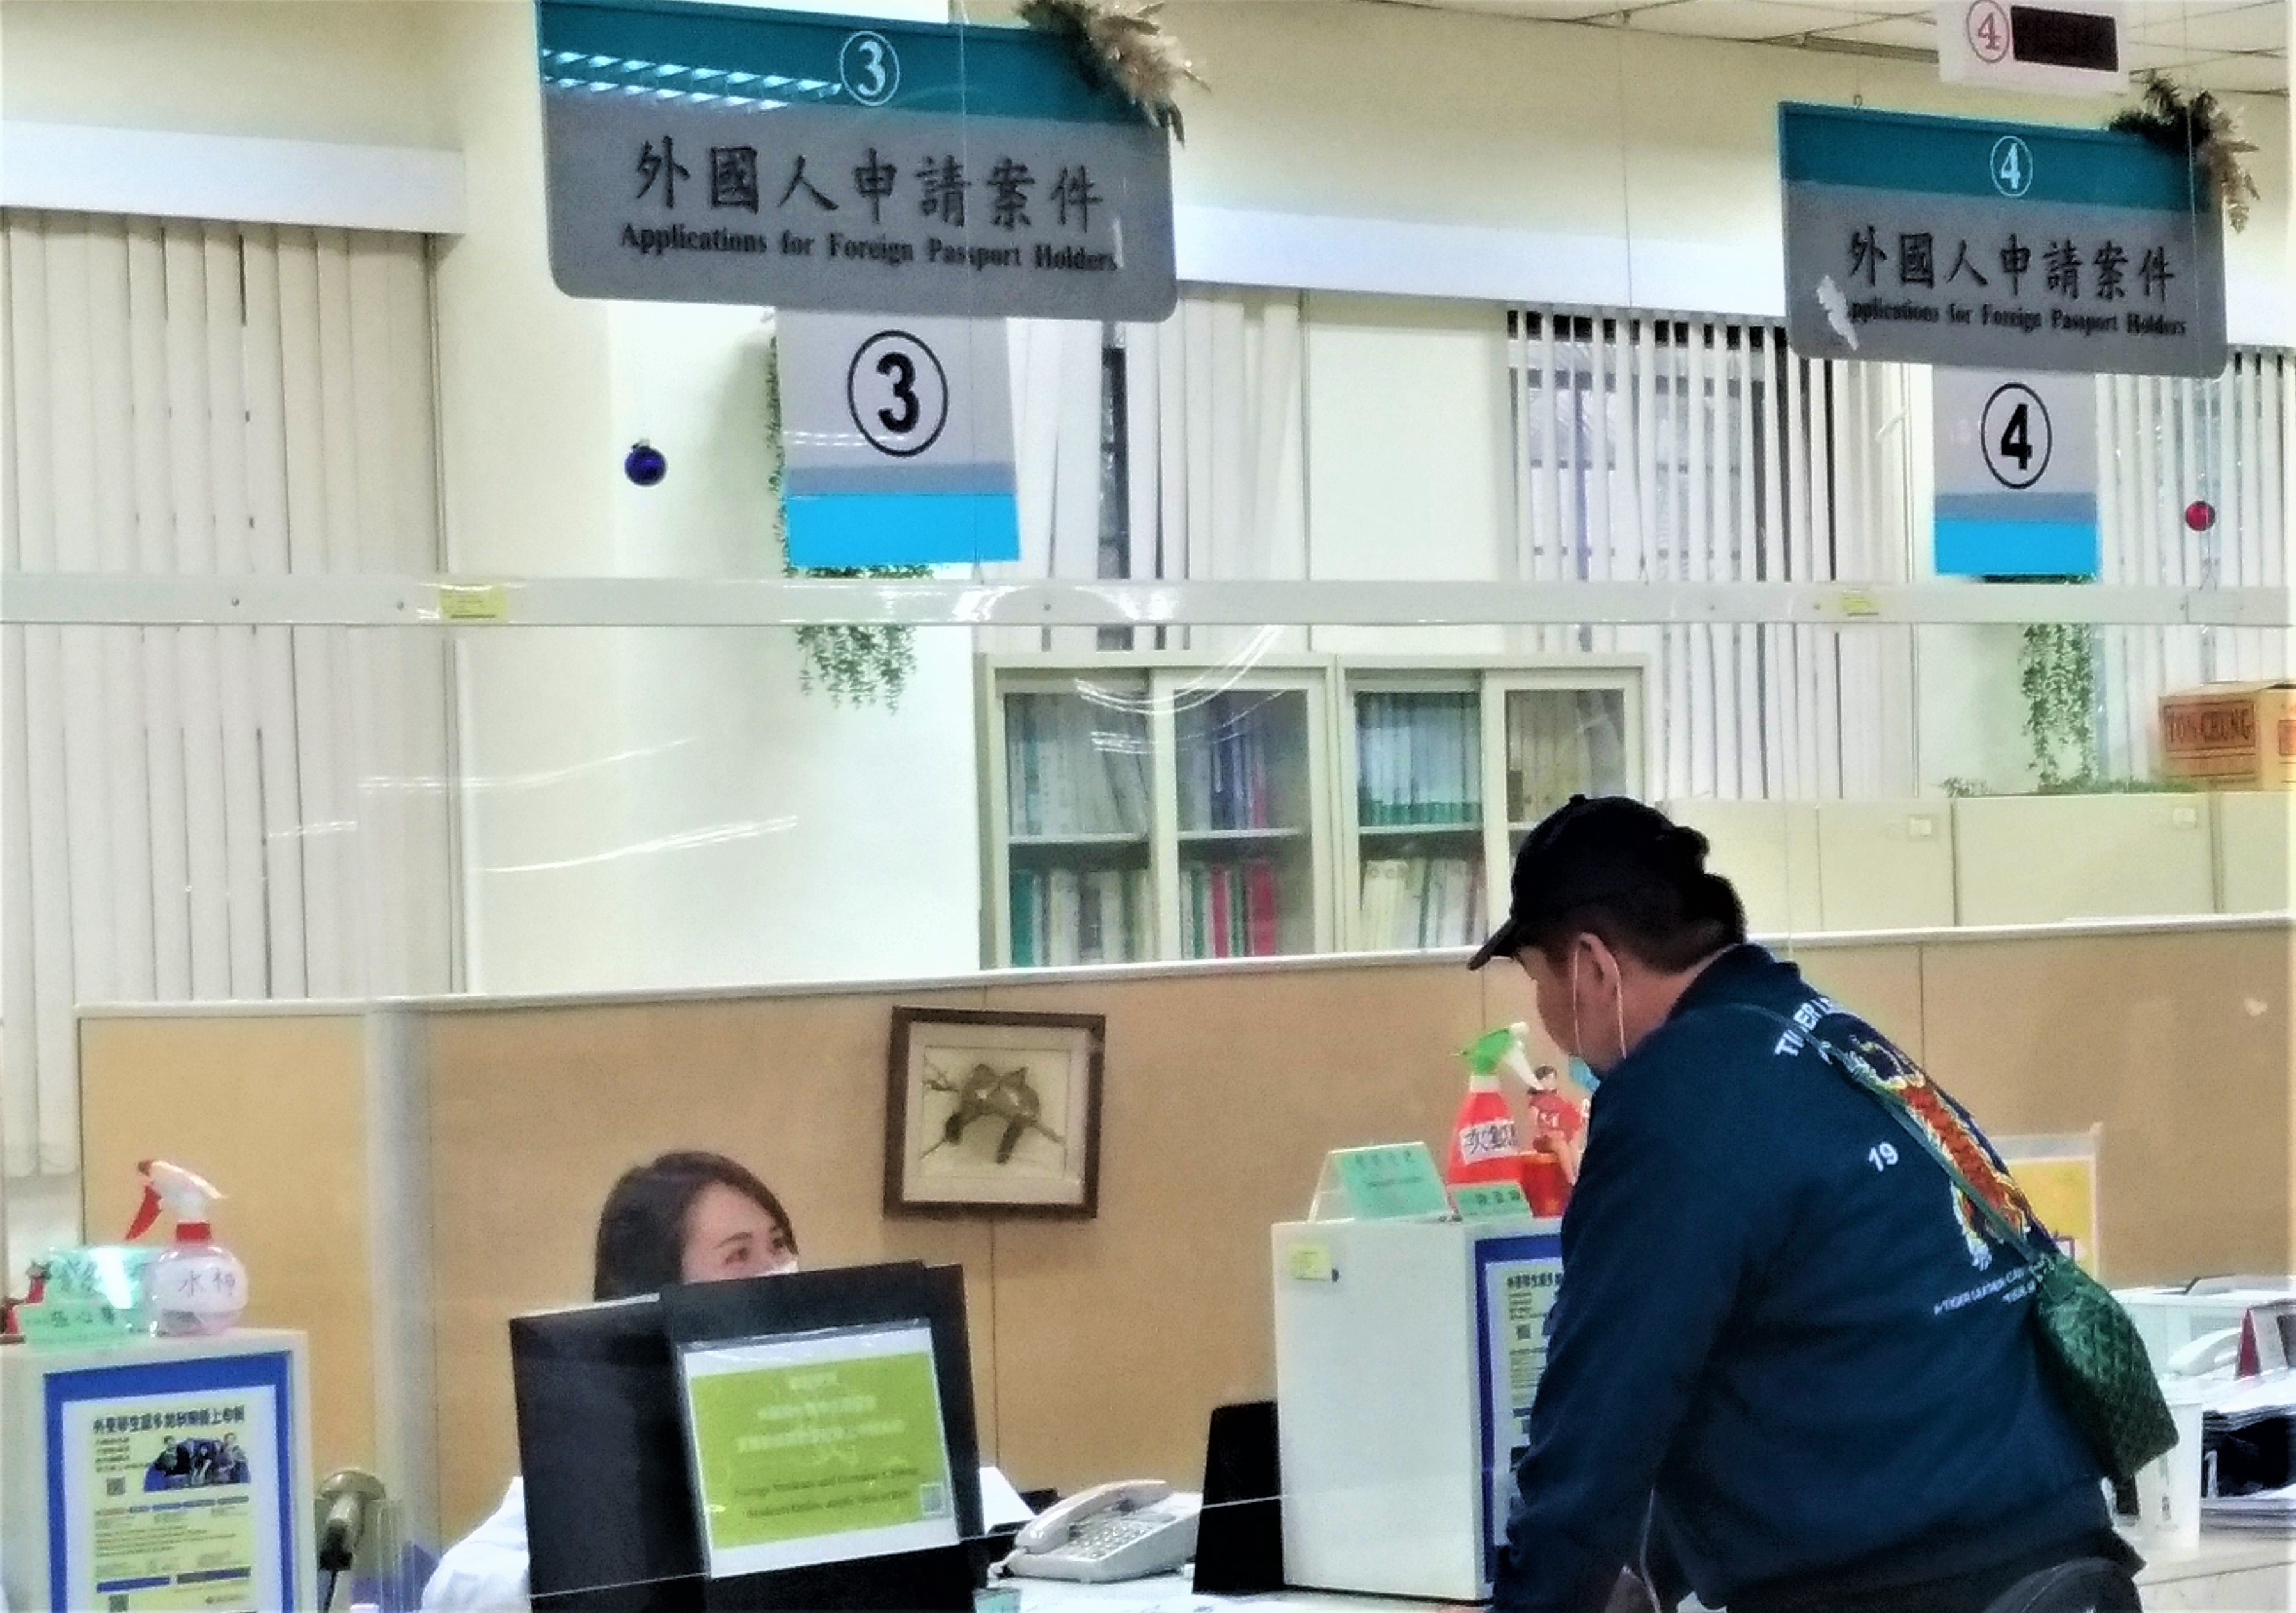 Masyarakat pergi ke Stasiun Layanan untuk mengurus dokumen. Sumber: Diambil dari Departemen Imigrasi